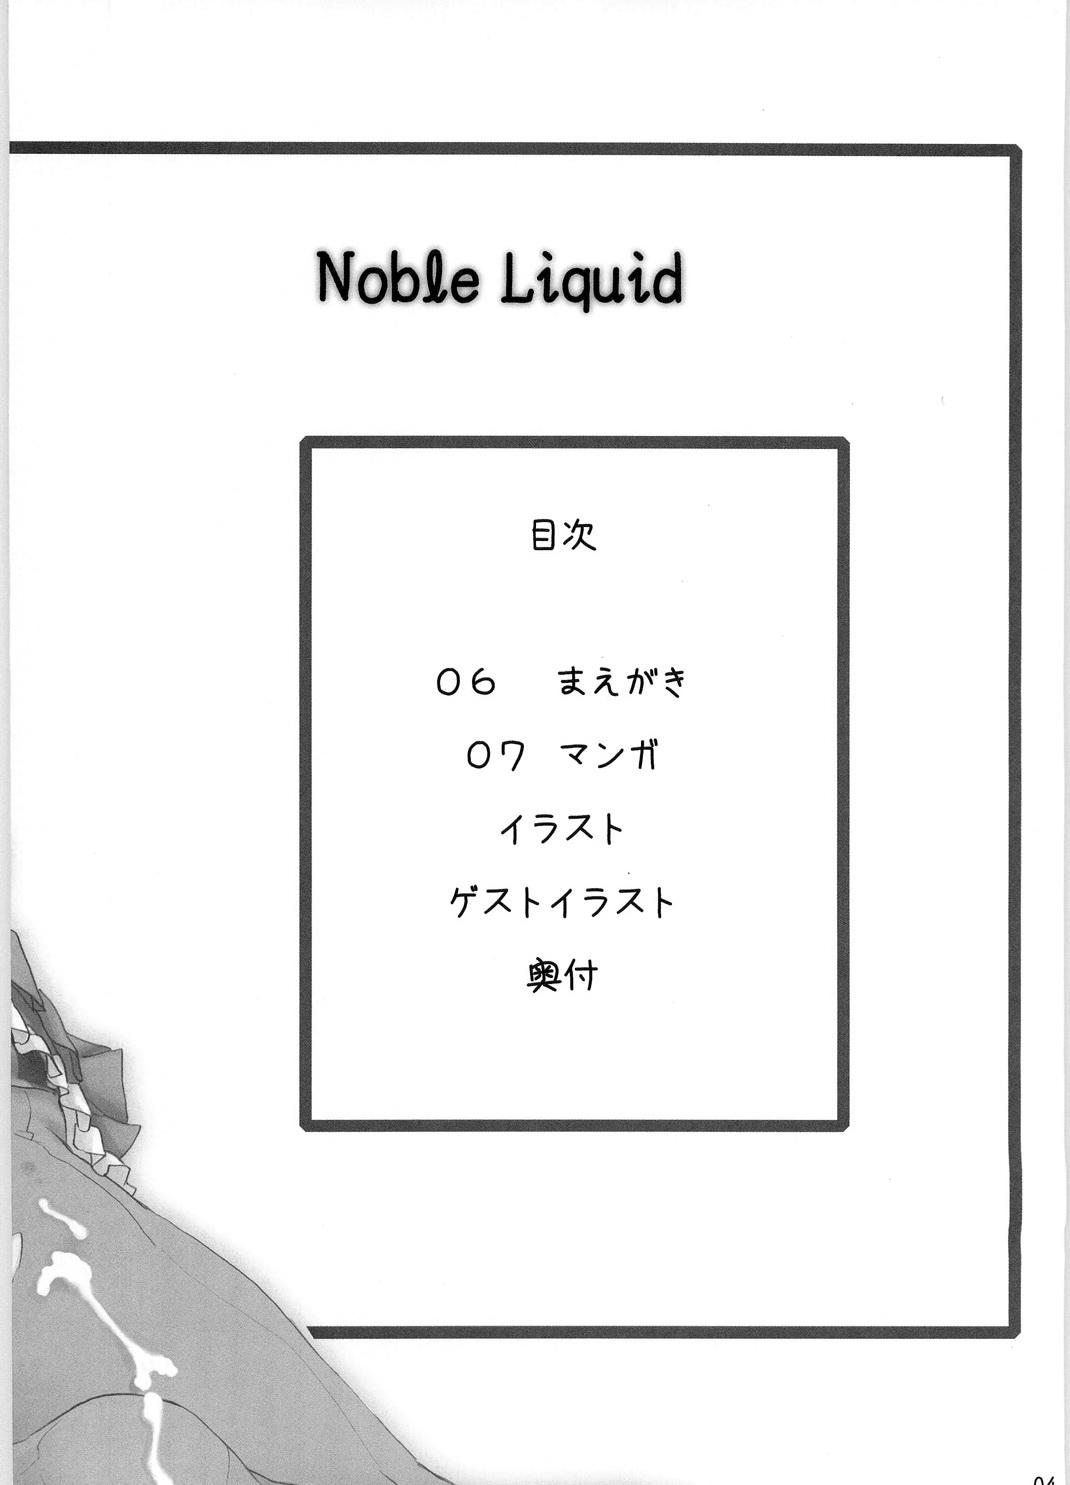 Noble Liquid 2